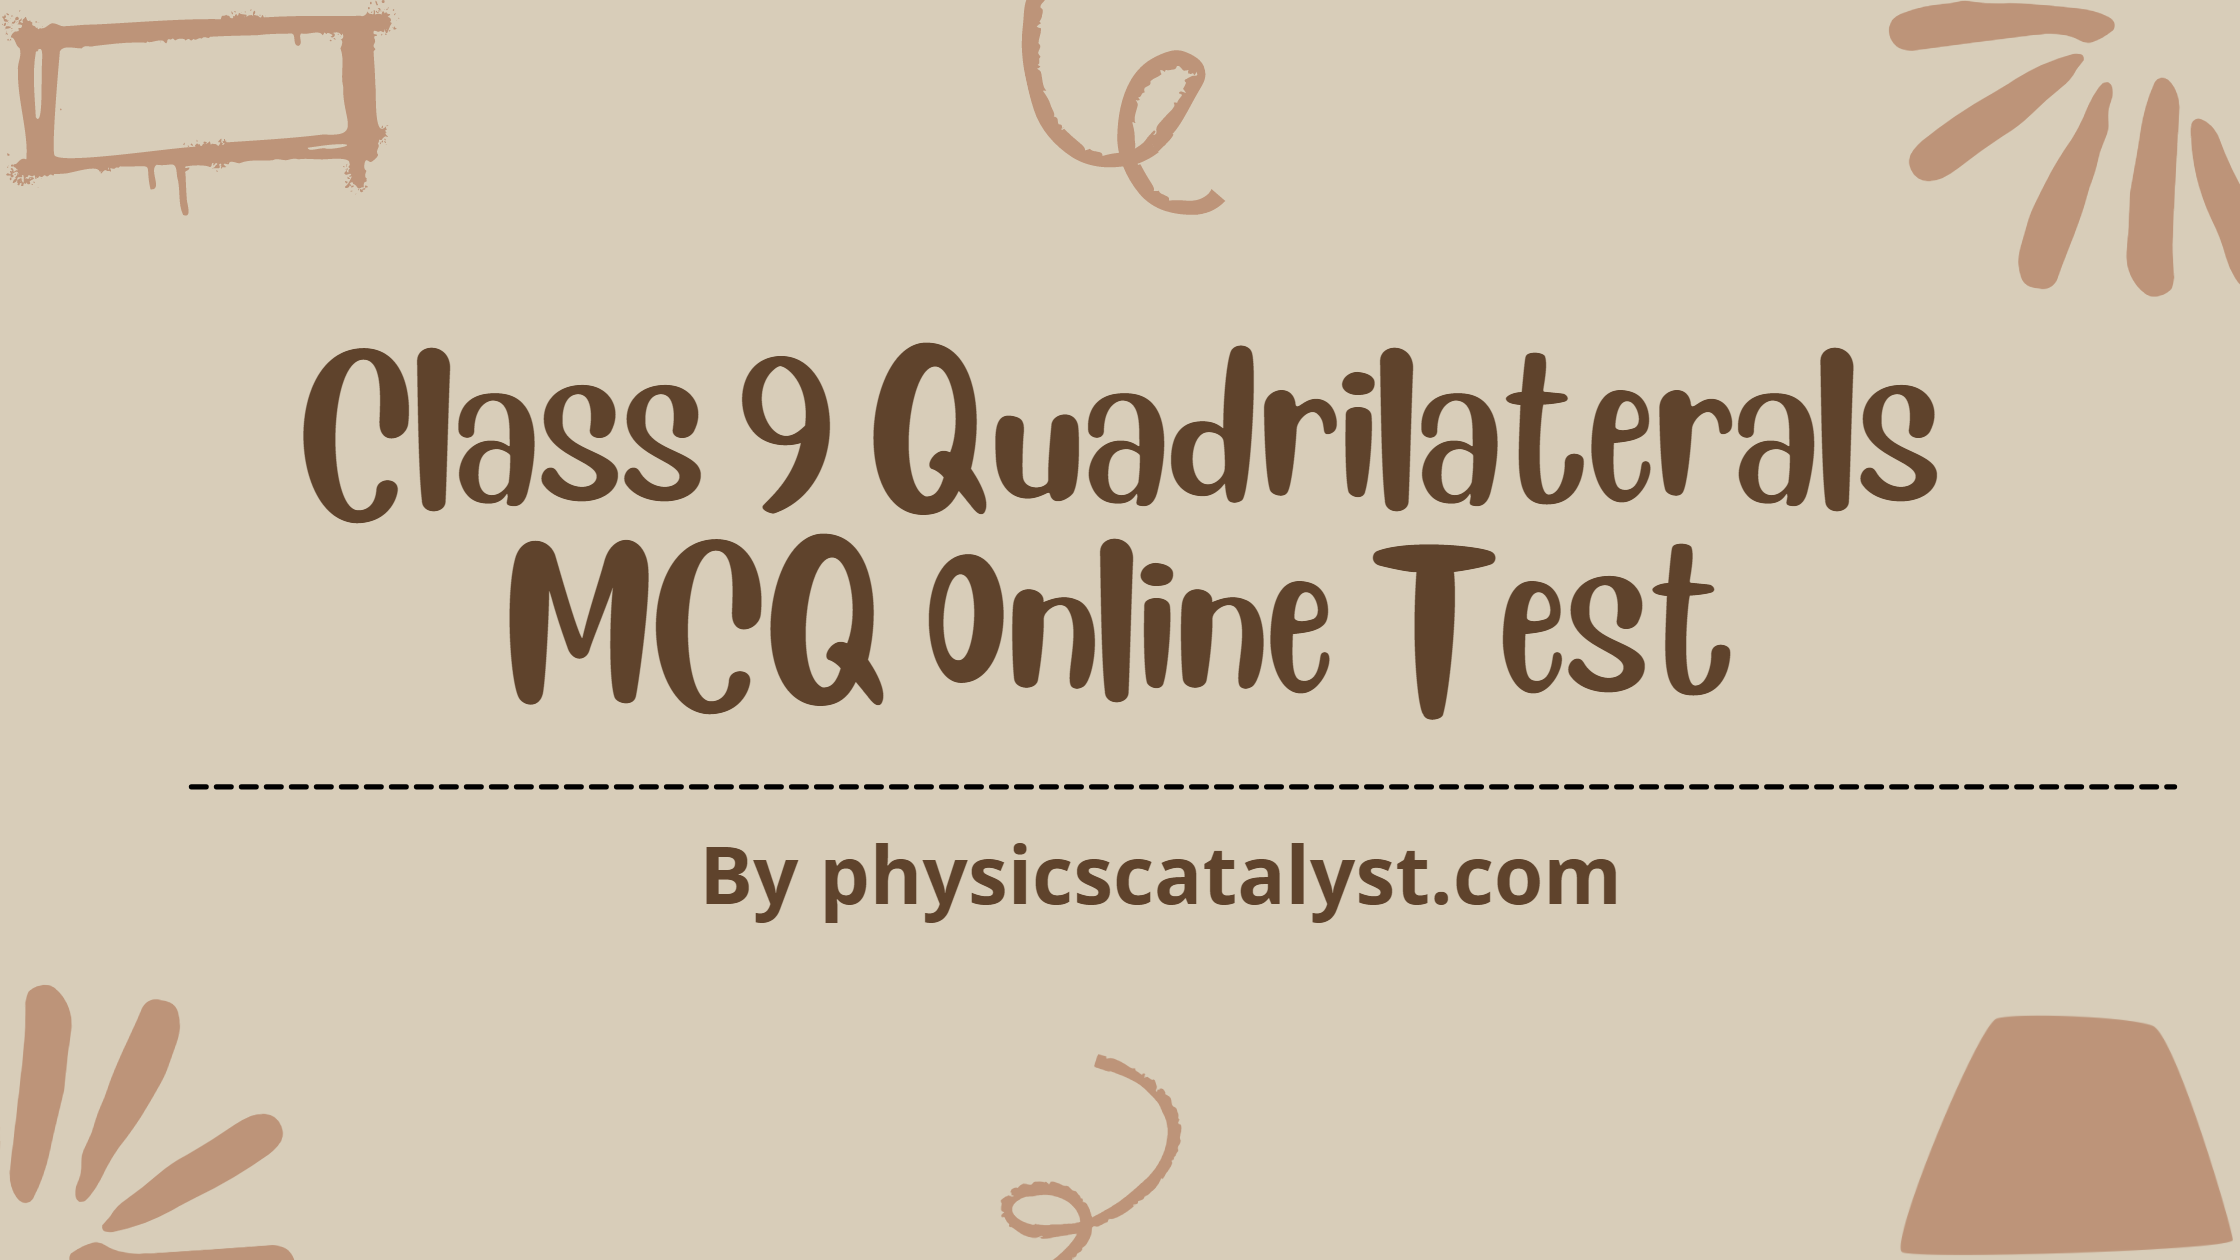 Class 9 Quadrilaterals MCQ Online Test blog banner